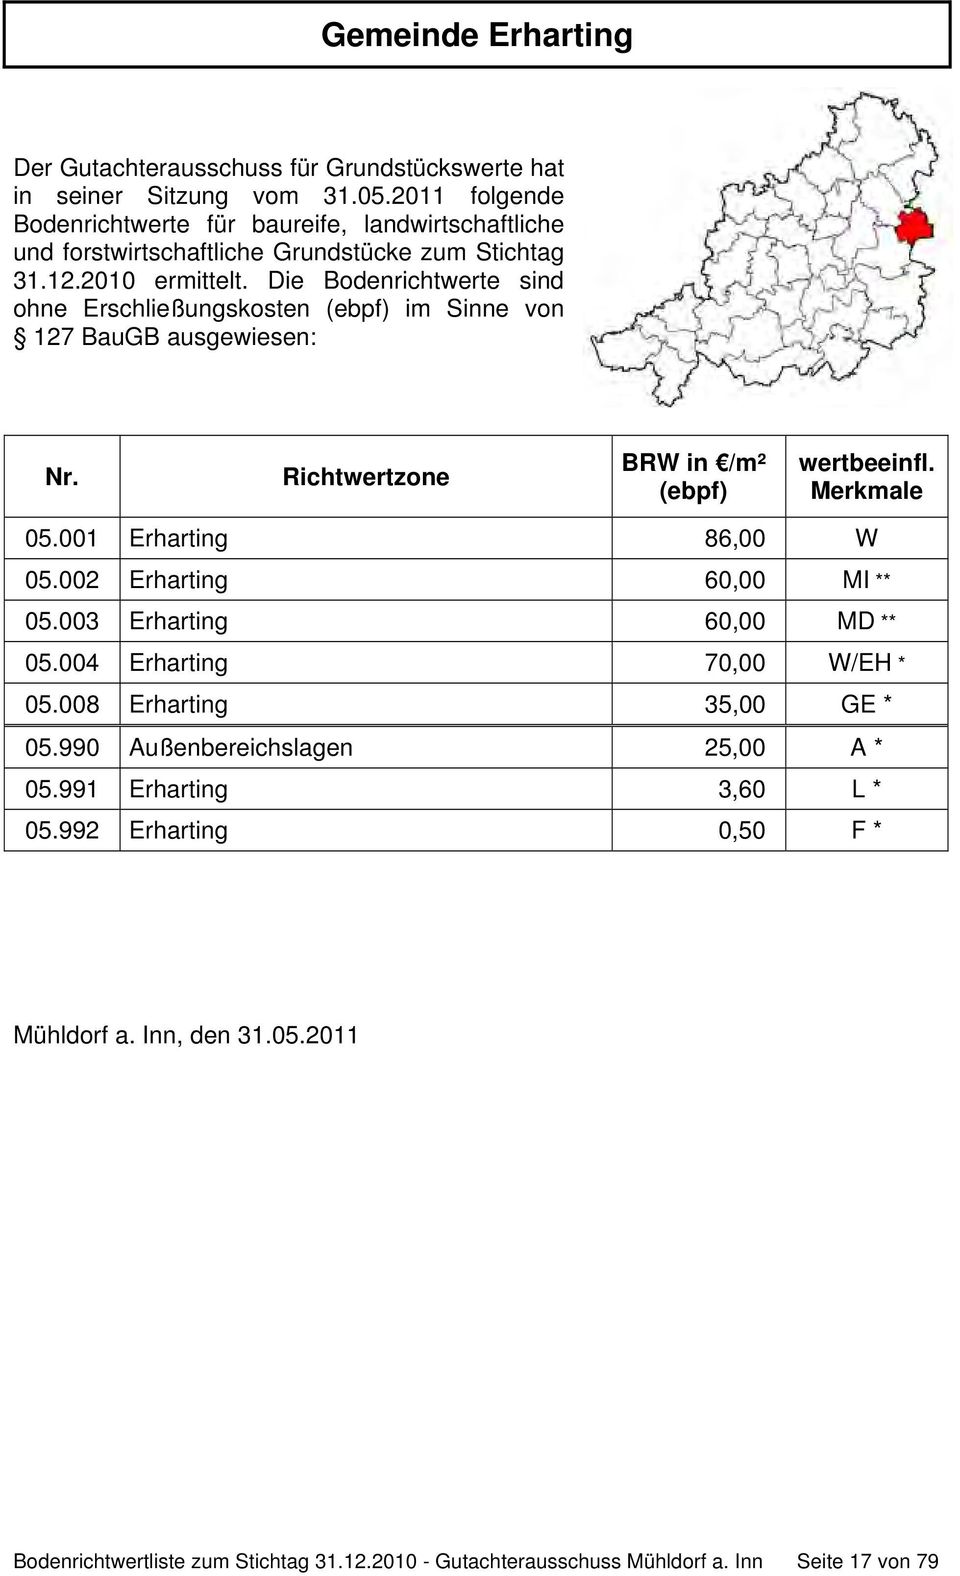 Die Bodenrichtwerte sind ohne Erschließungskosten (ebpf) im Sinne von 127 BauGB ausgewiesen: Nr. Richtwertzone BRW in /m² (ebpf) wertbeeinfl. Merkmale 05.001 Erharting 86,00 W 05.